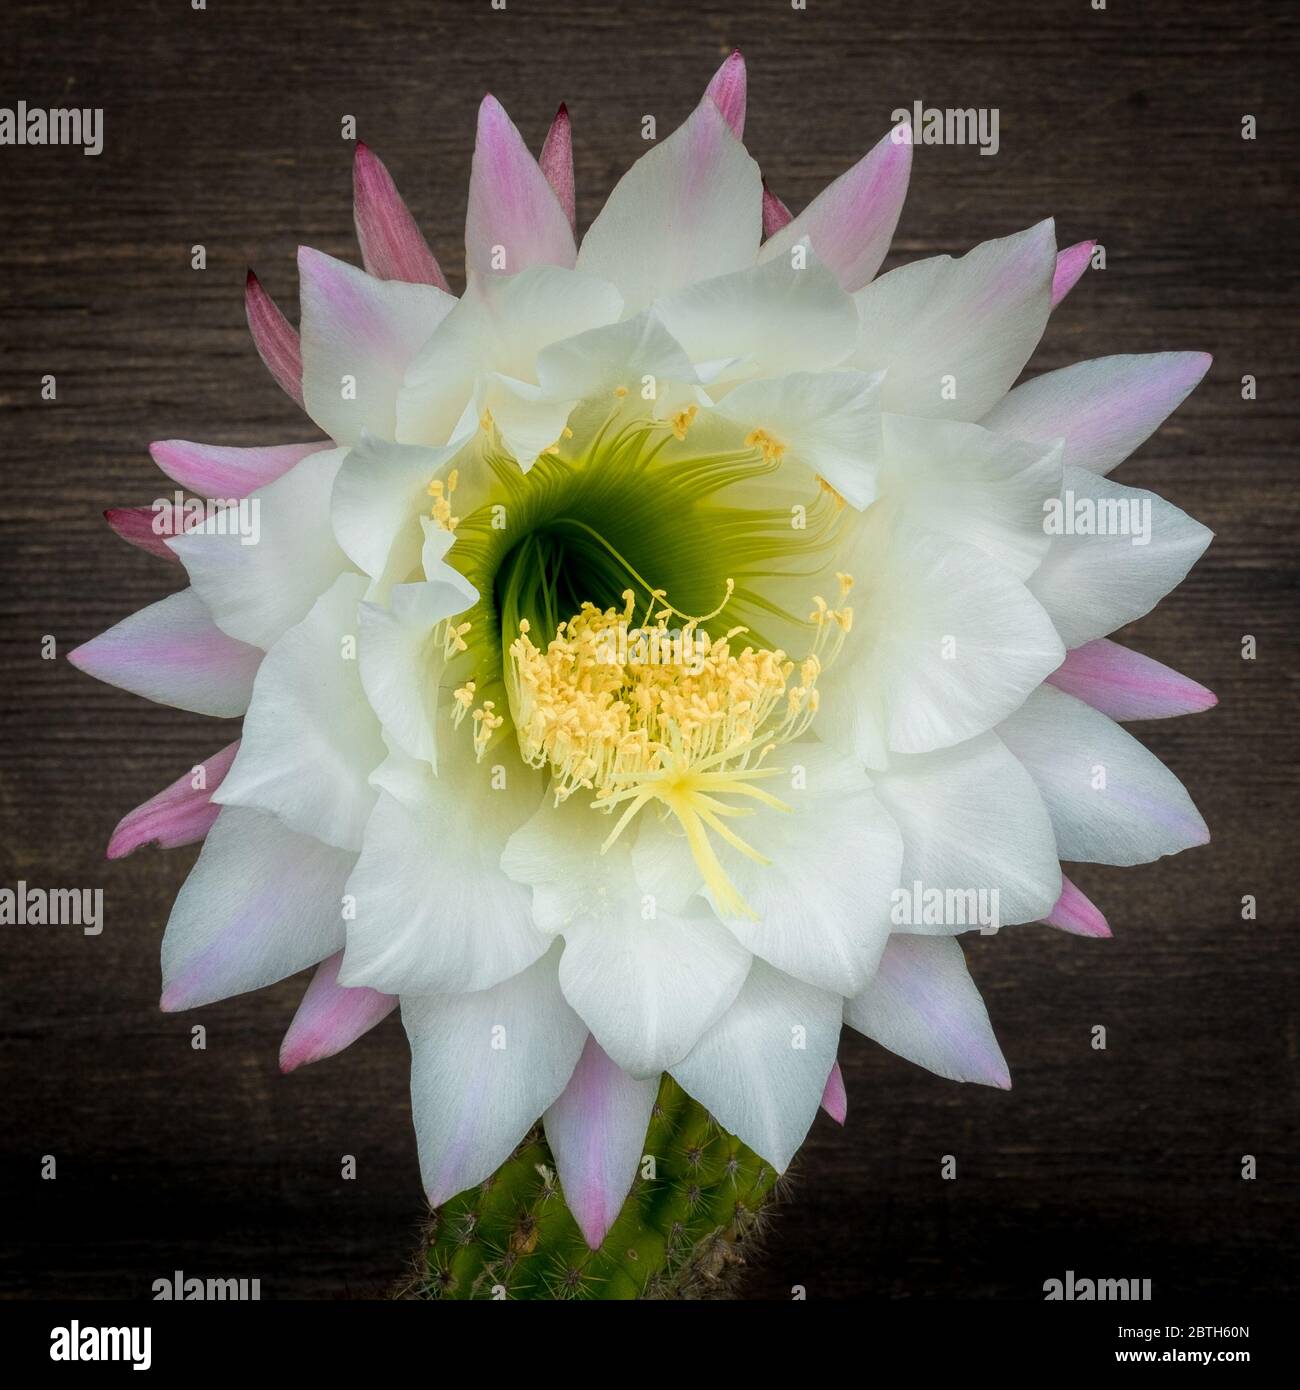 Nahaufnahme der Echinopsis Blume. Cactaceae Pflanze, Gattung Echinopsis, in seiner seltenen Blüte. Stockfoto